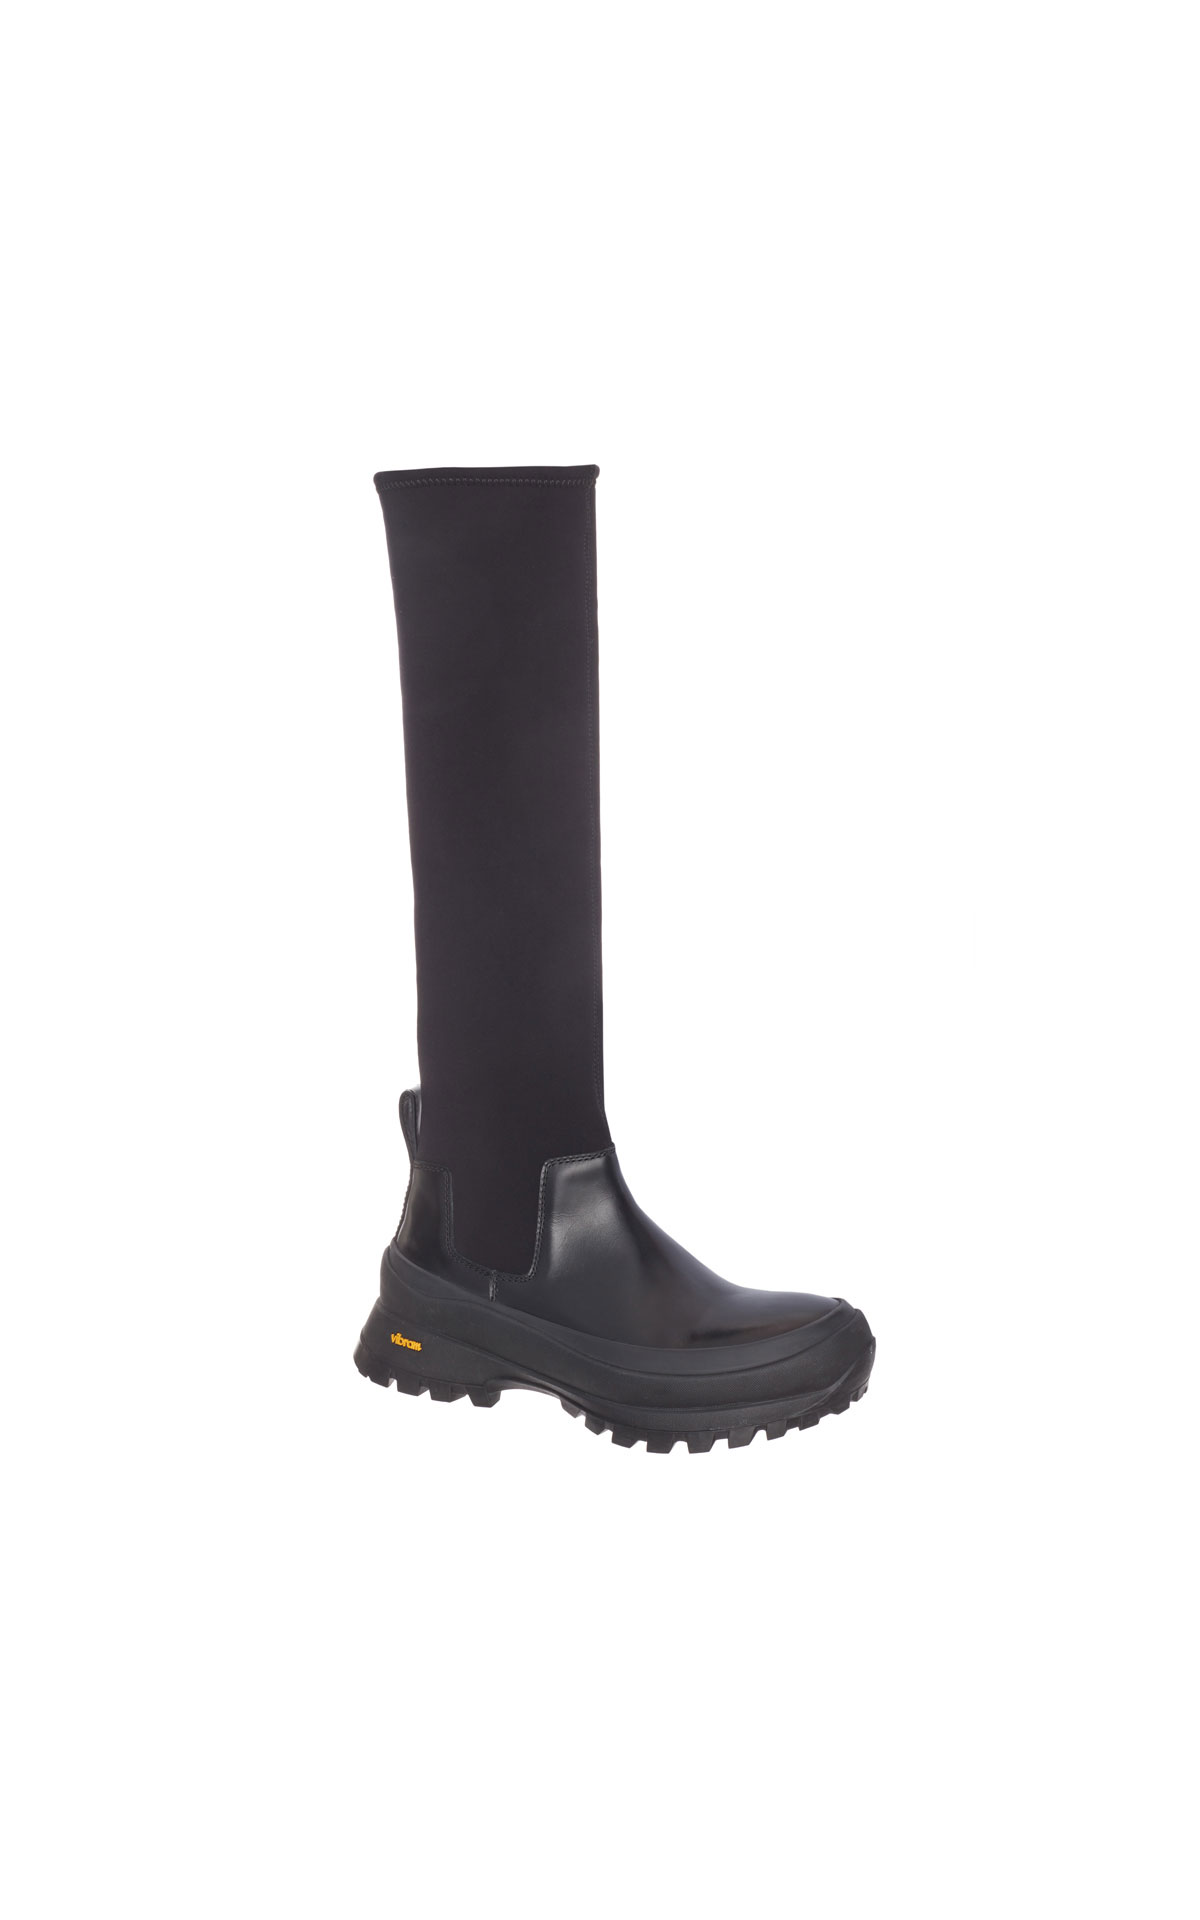 Jil Sander Black boots from Bicester Village